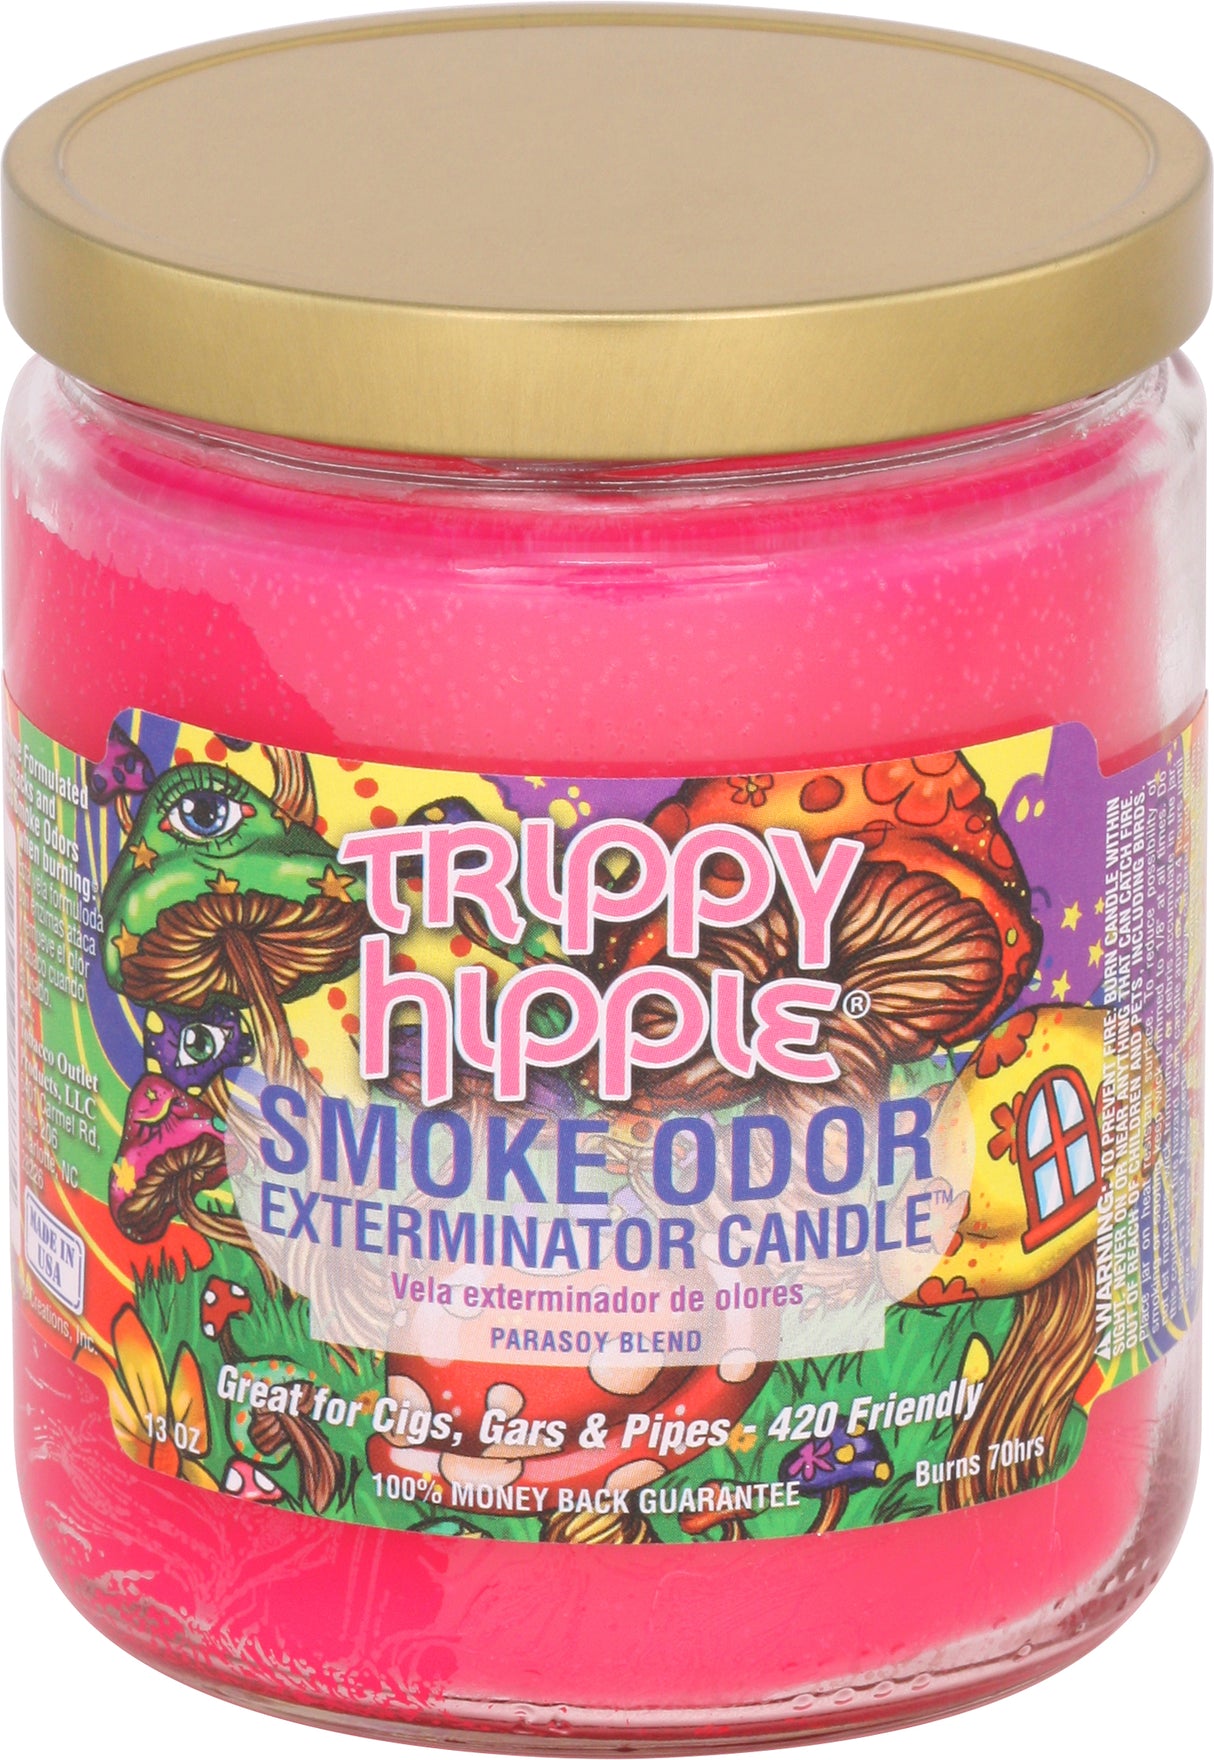 Smoke Odor 13 Oz. Candle: Trippy Hippie